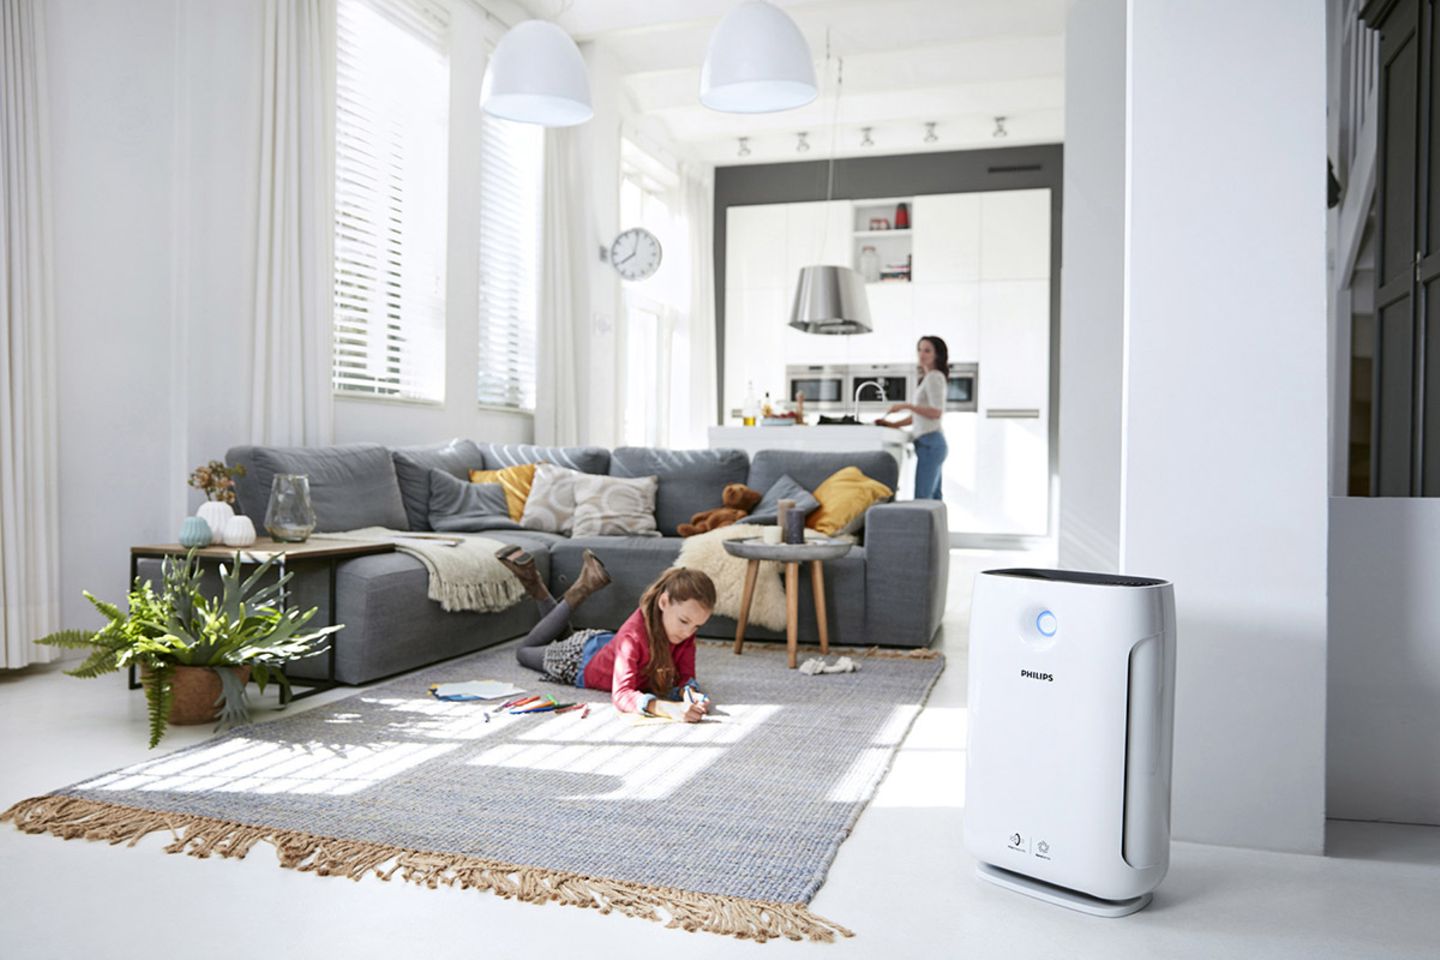 Luftreiniger "AC2889" von Philips in einem Wohnzimmer mit einem jungen Mädchen auf einem Teppich und der Mutter im Hintergrund